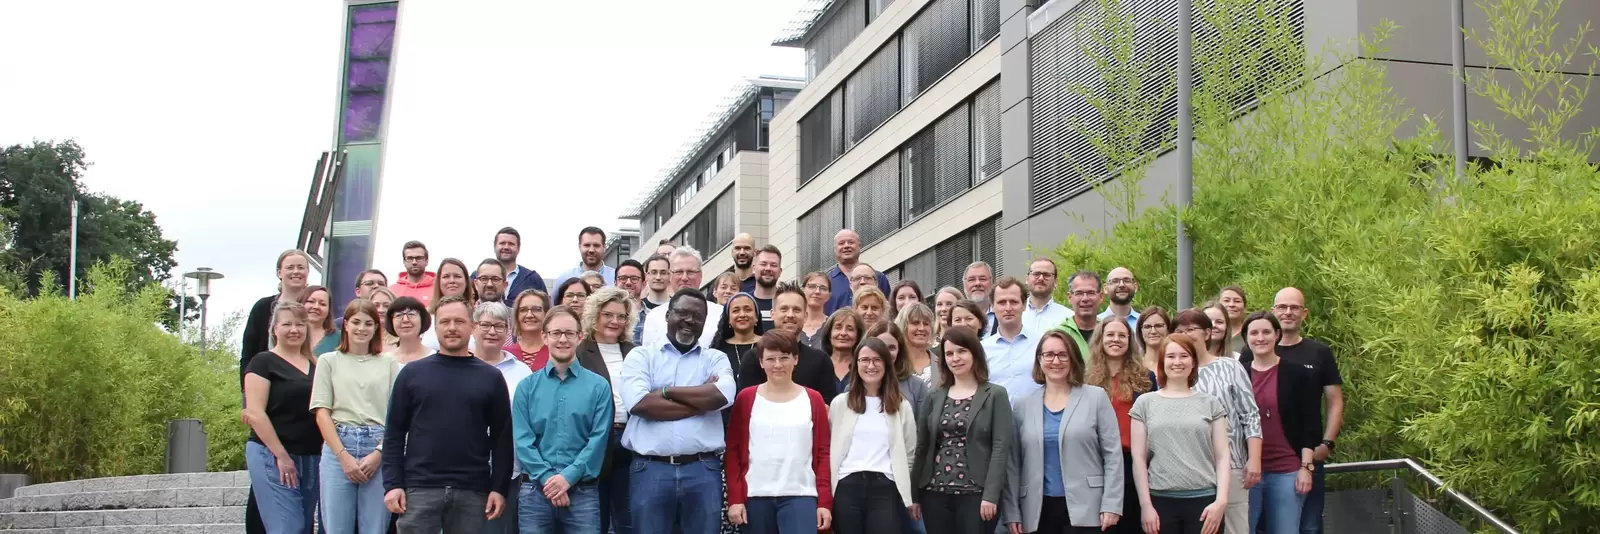 Teambild Mitarbeiter der Energieagentur Rheinland-Pfalz